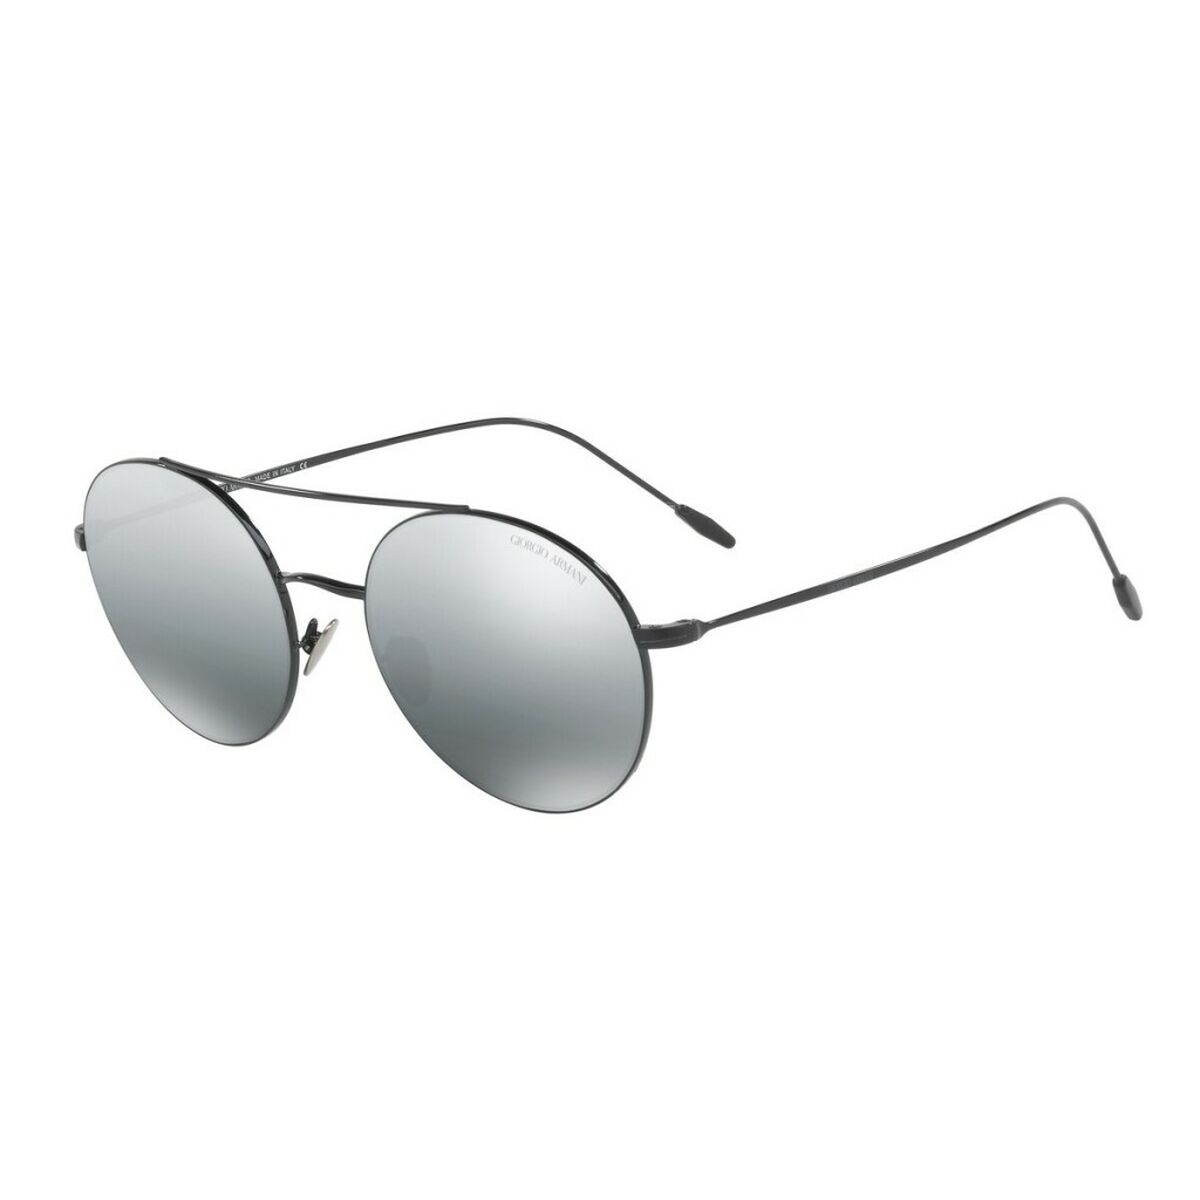 Kaufe Herrensonnenbrille Armani AR6050-301488 ø 50 mm bei AWK Flagship um € 148.00